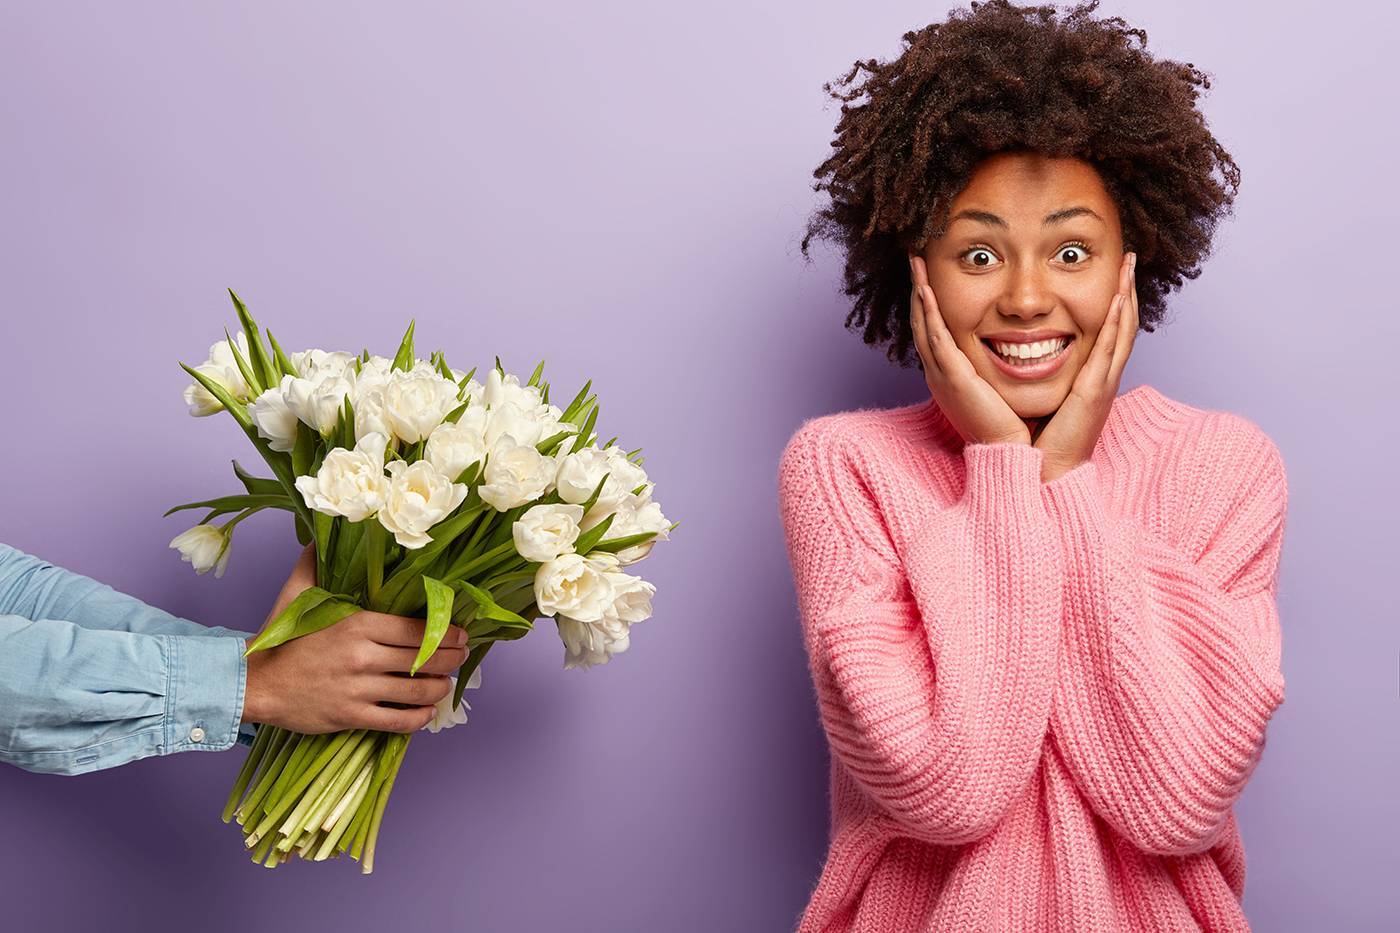 Flores y Emociones: Descubre la Psicología Detrás de Tus Arreglos Florales Favoritos